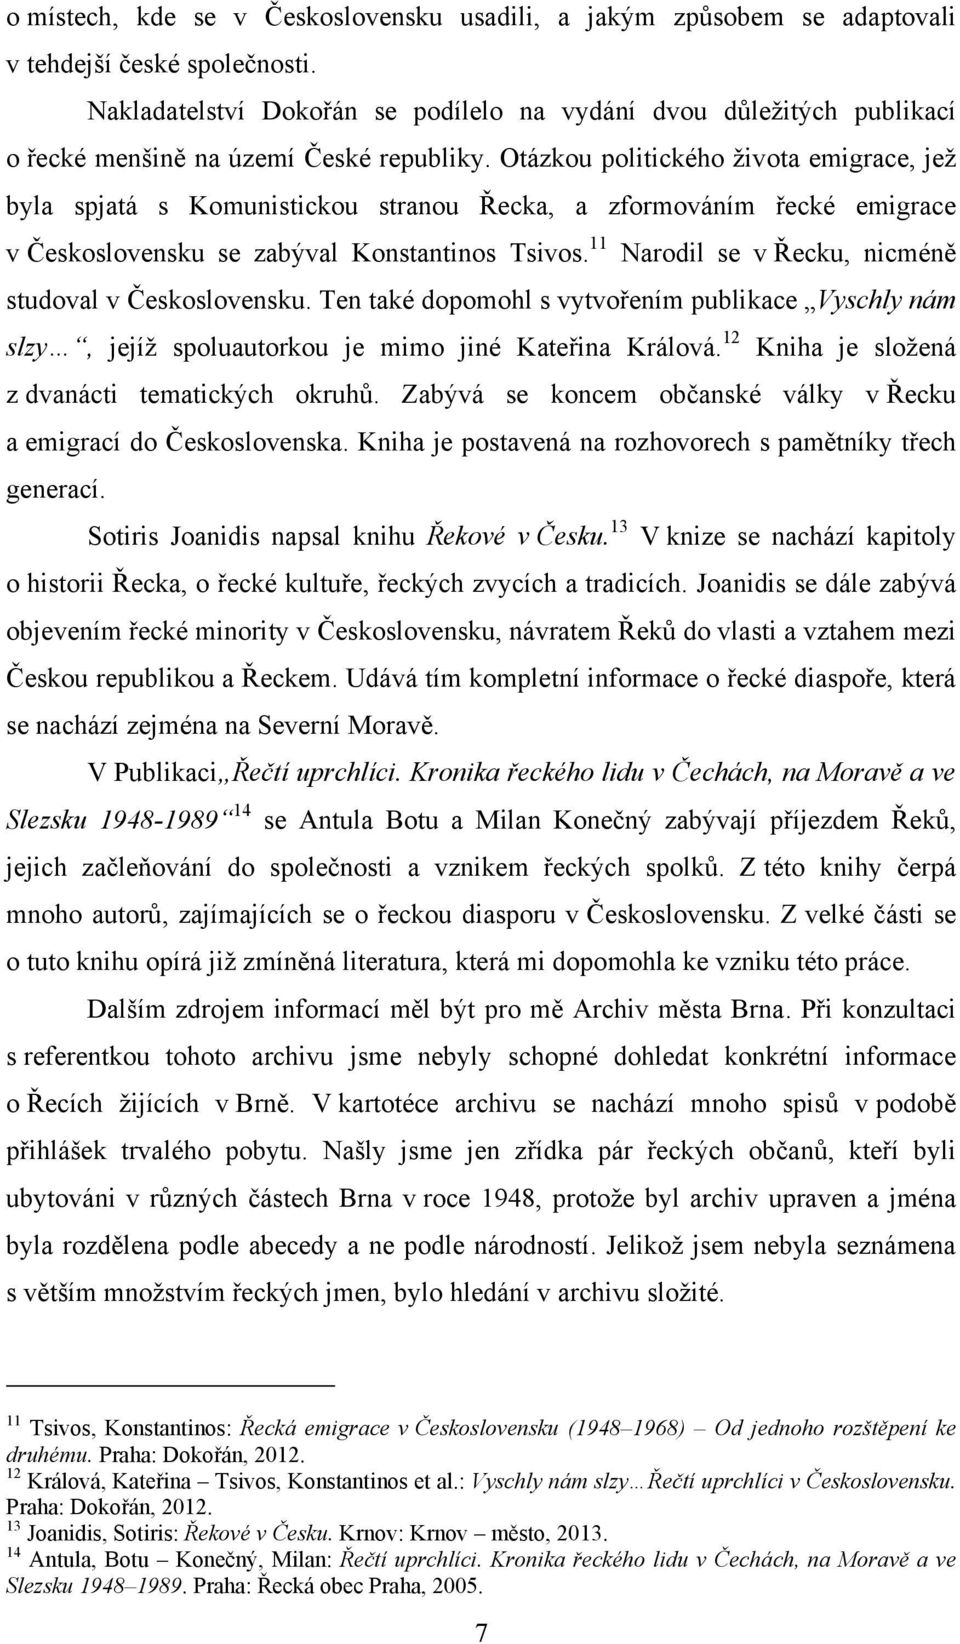 Otázkou politického ţivota emigrace, jeţ byla spjatá s Komunistickou stranou Řecka, a zformováním řecké emigrace v Československu se zabýval Konstantinos Tsivos.